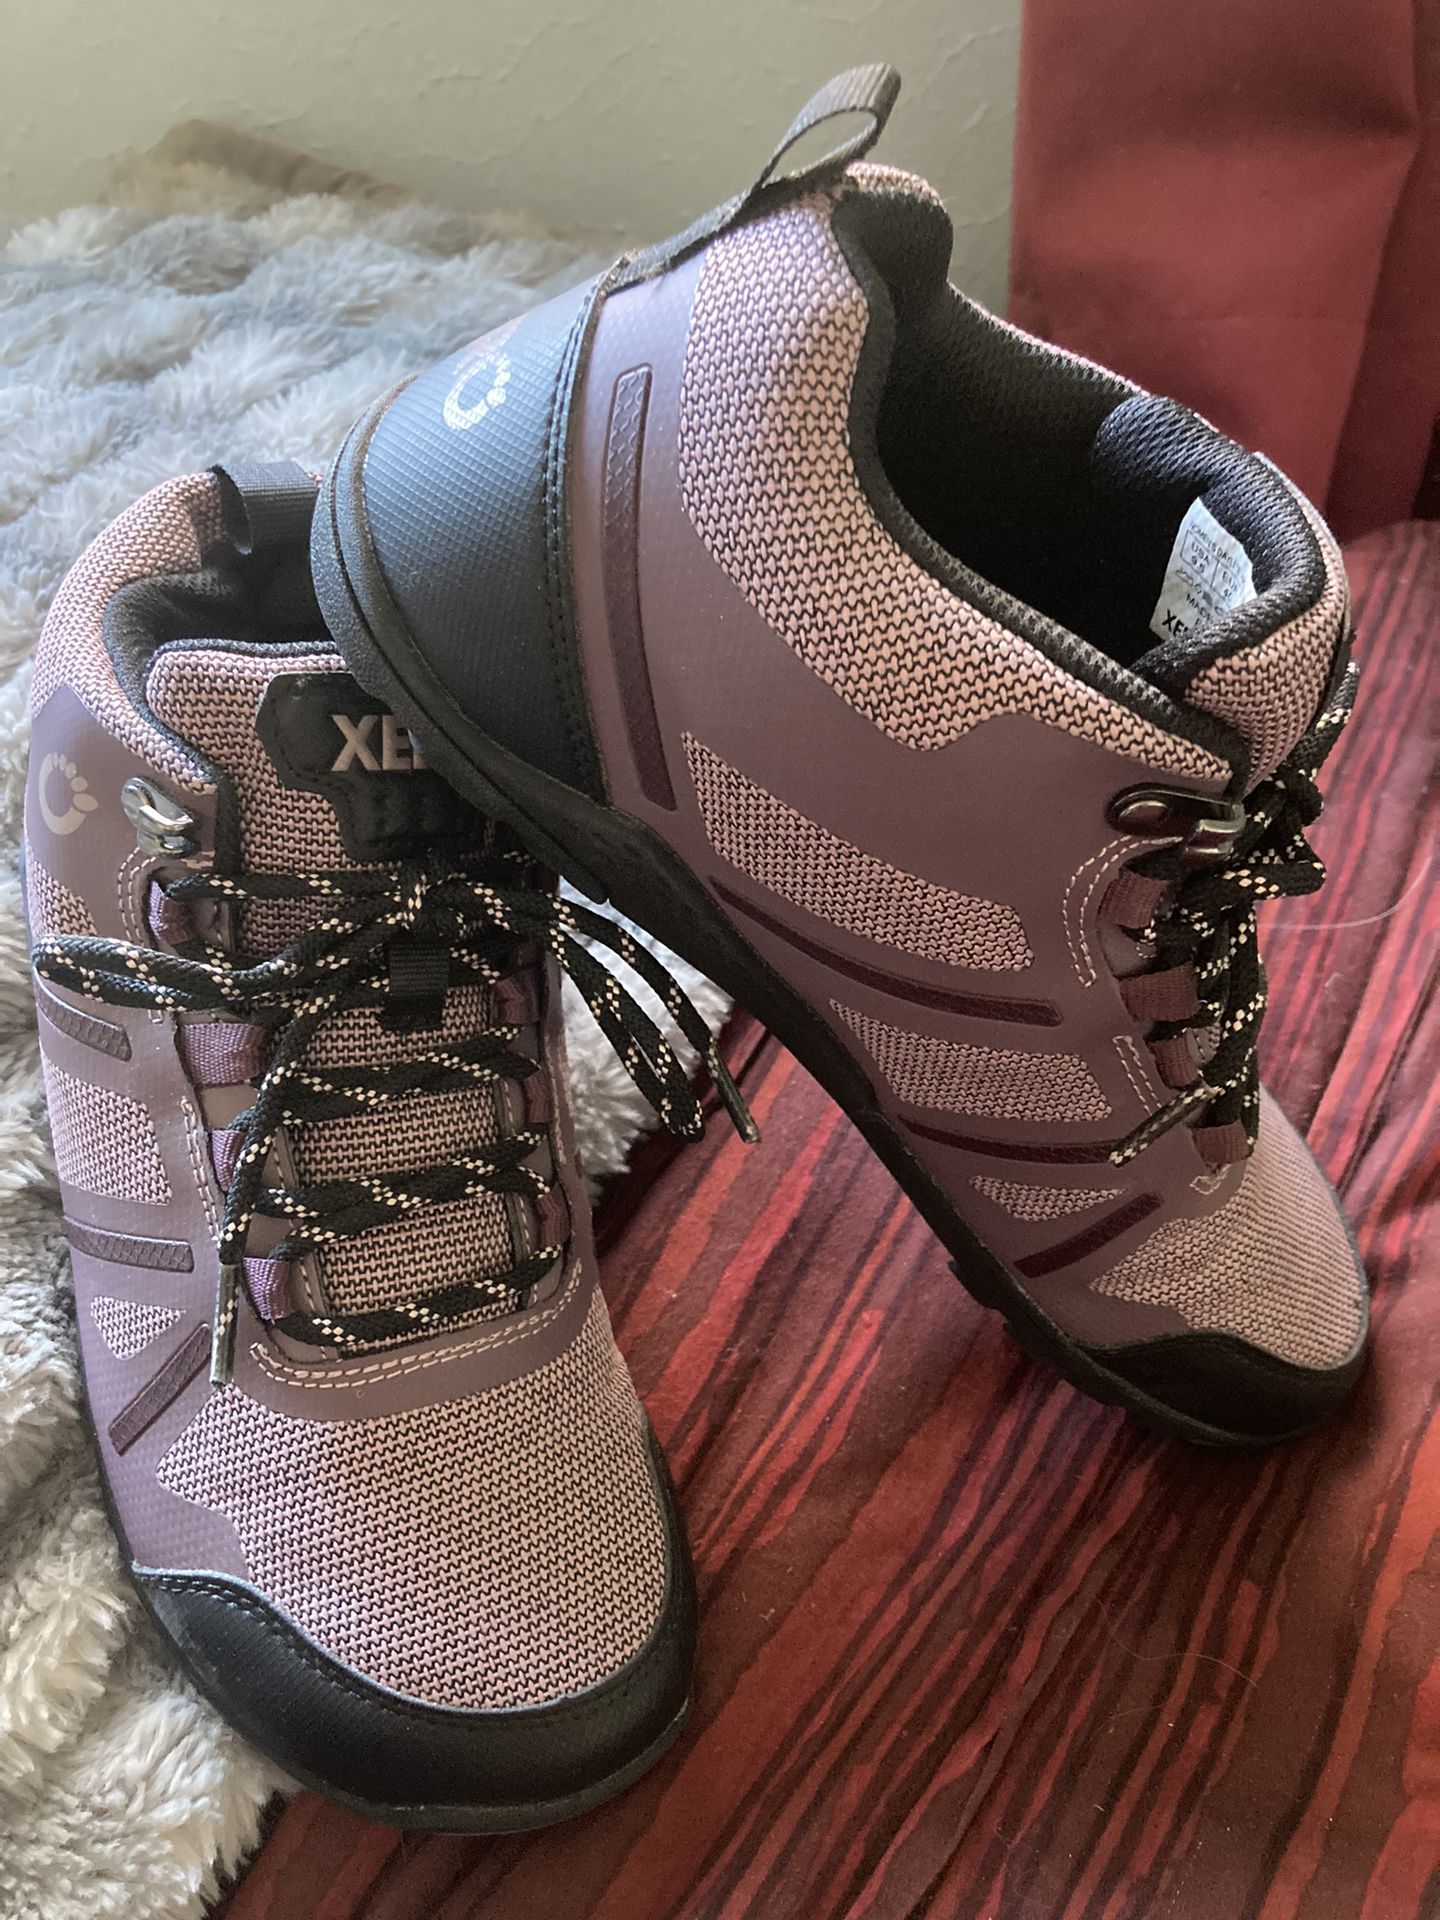 BRAND NEW Xero Hiking Boots